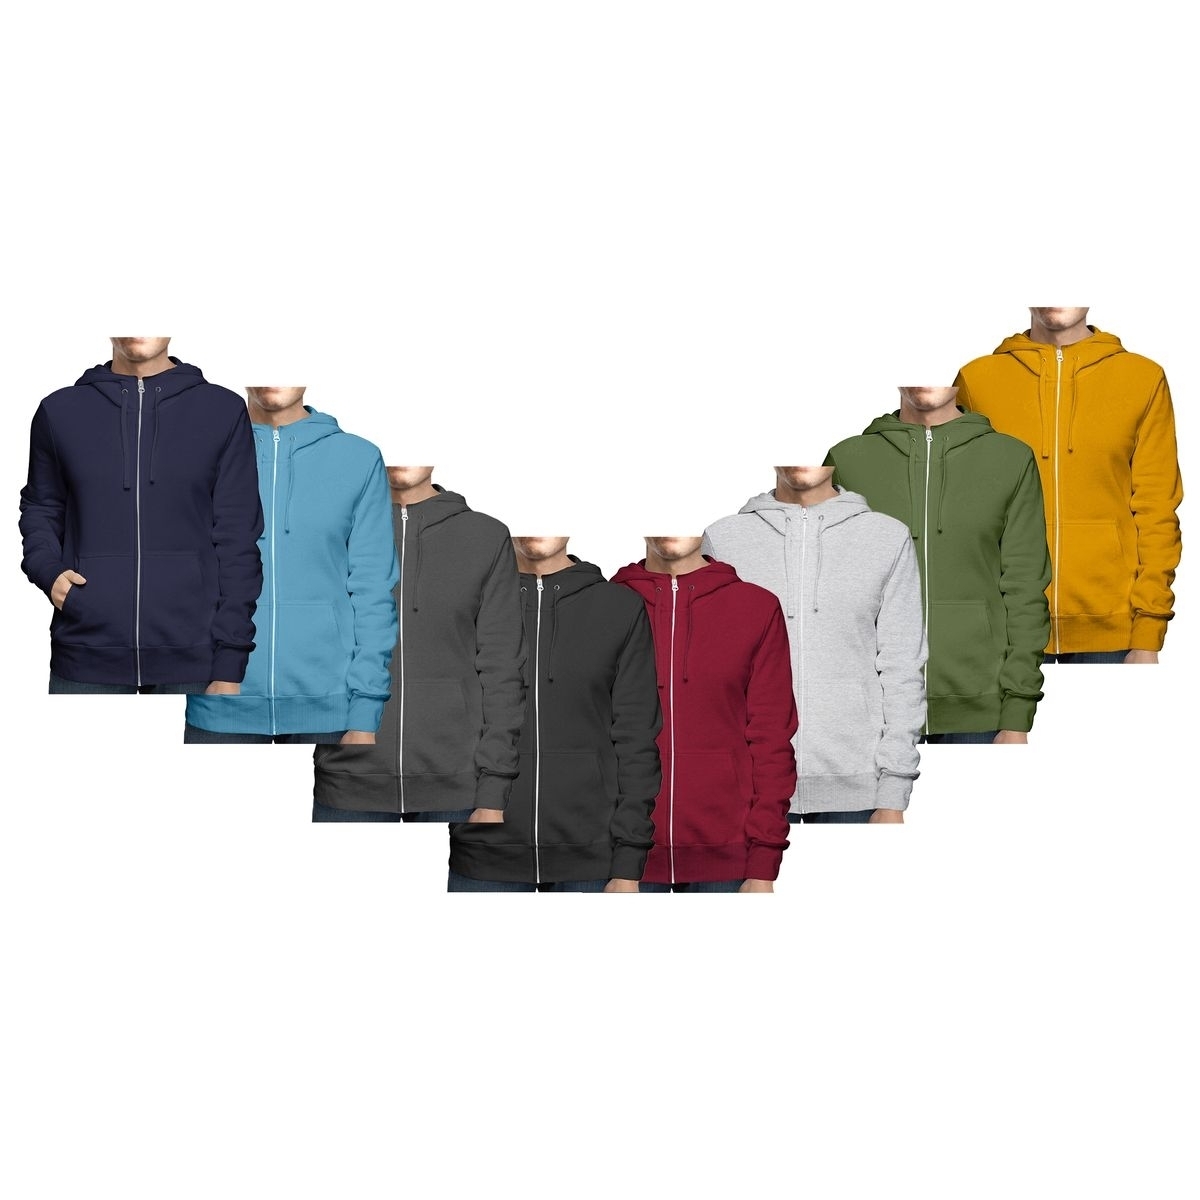 Men's Winter Warm Cozy Full Zip-Up Fleece Lined Soft Hoodie Sweatshirt - Navy, Large